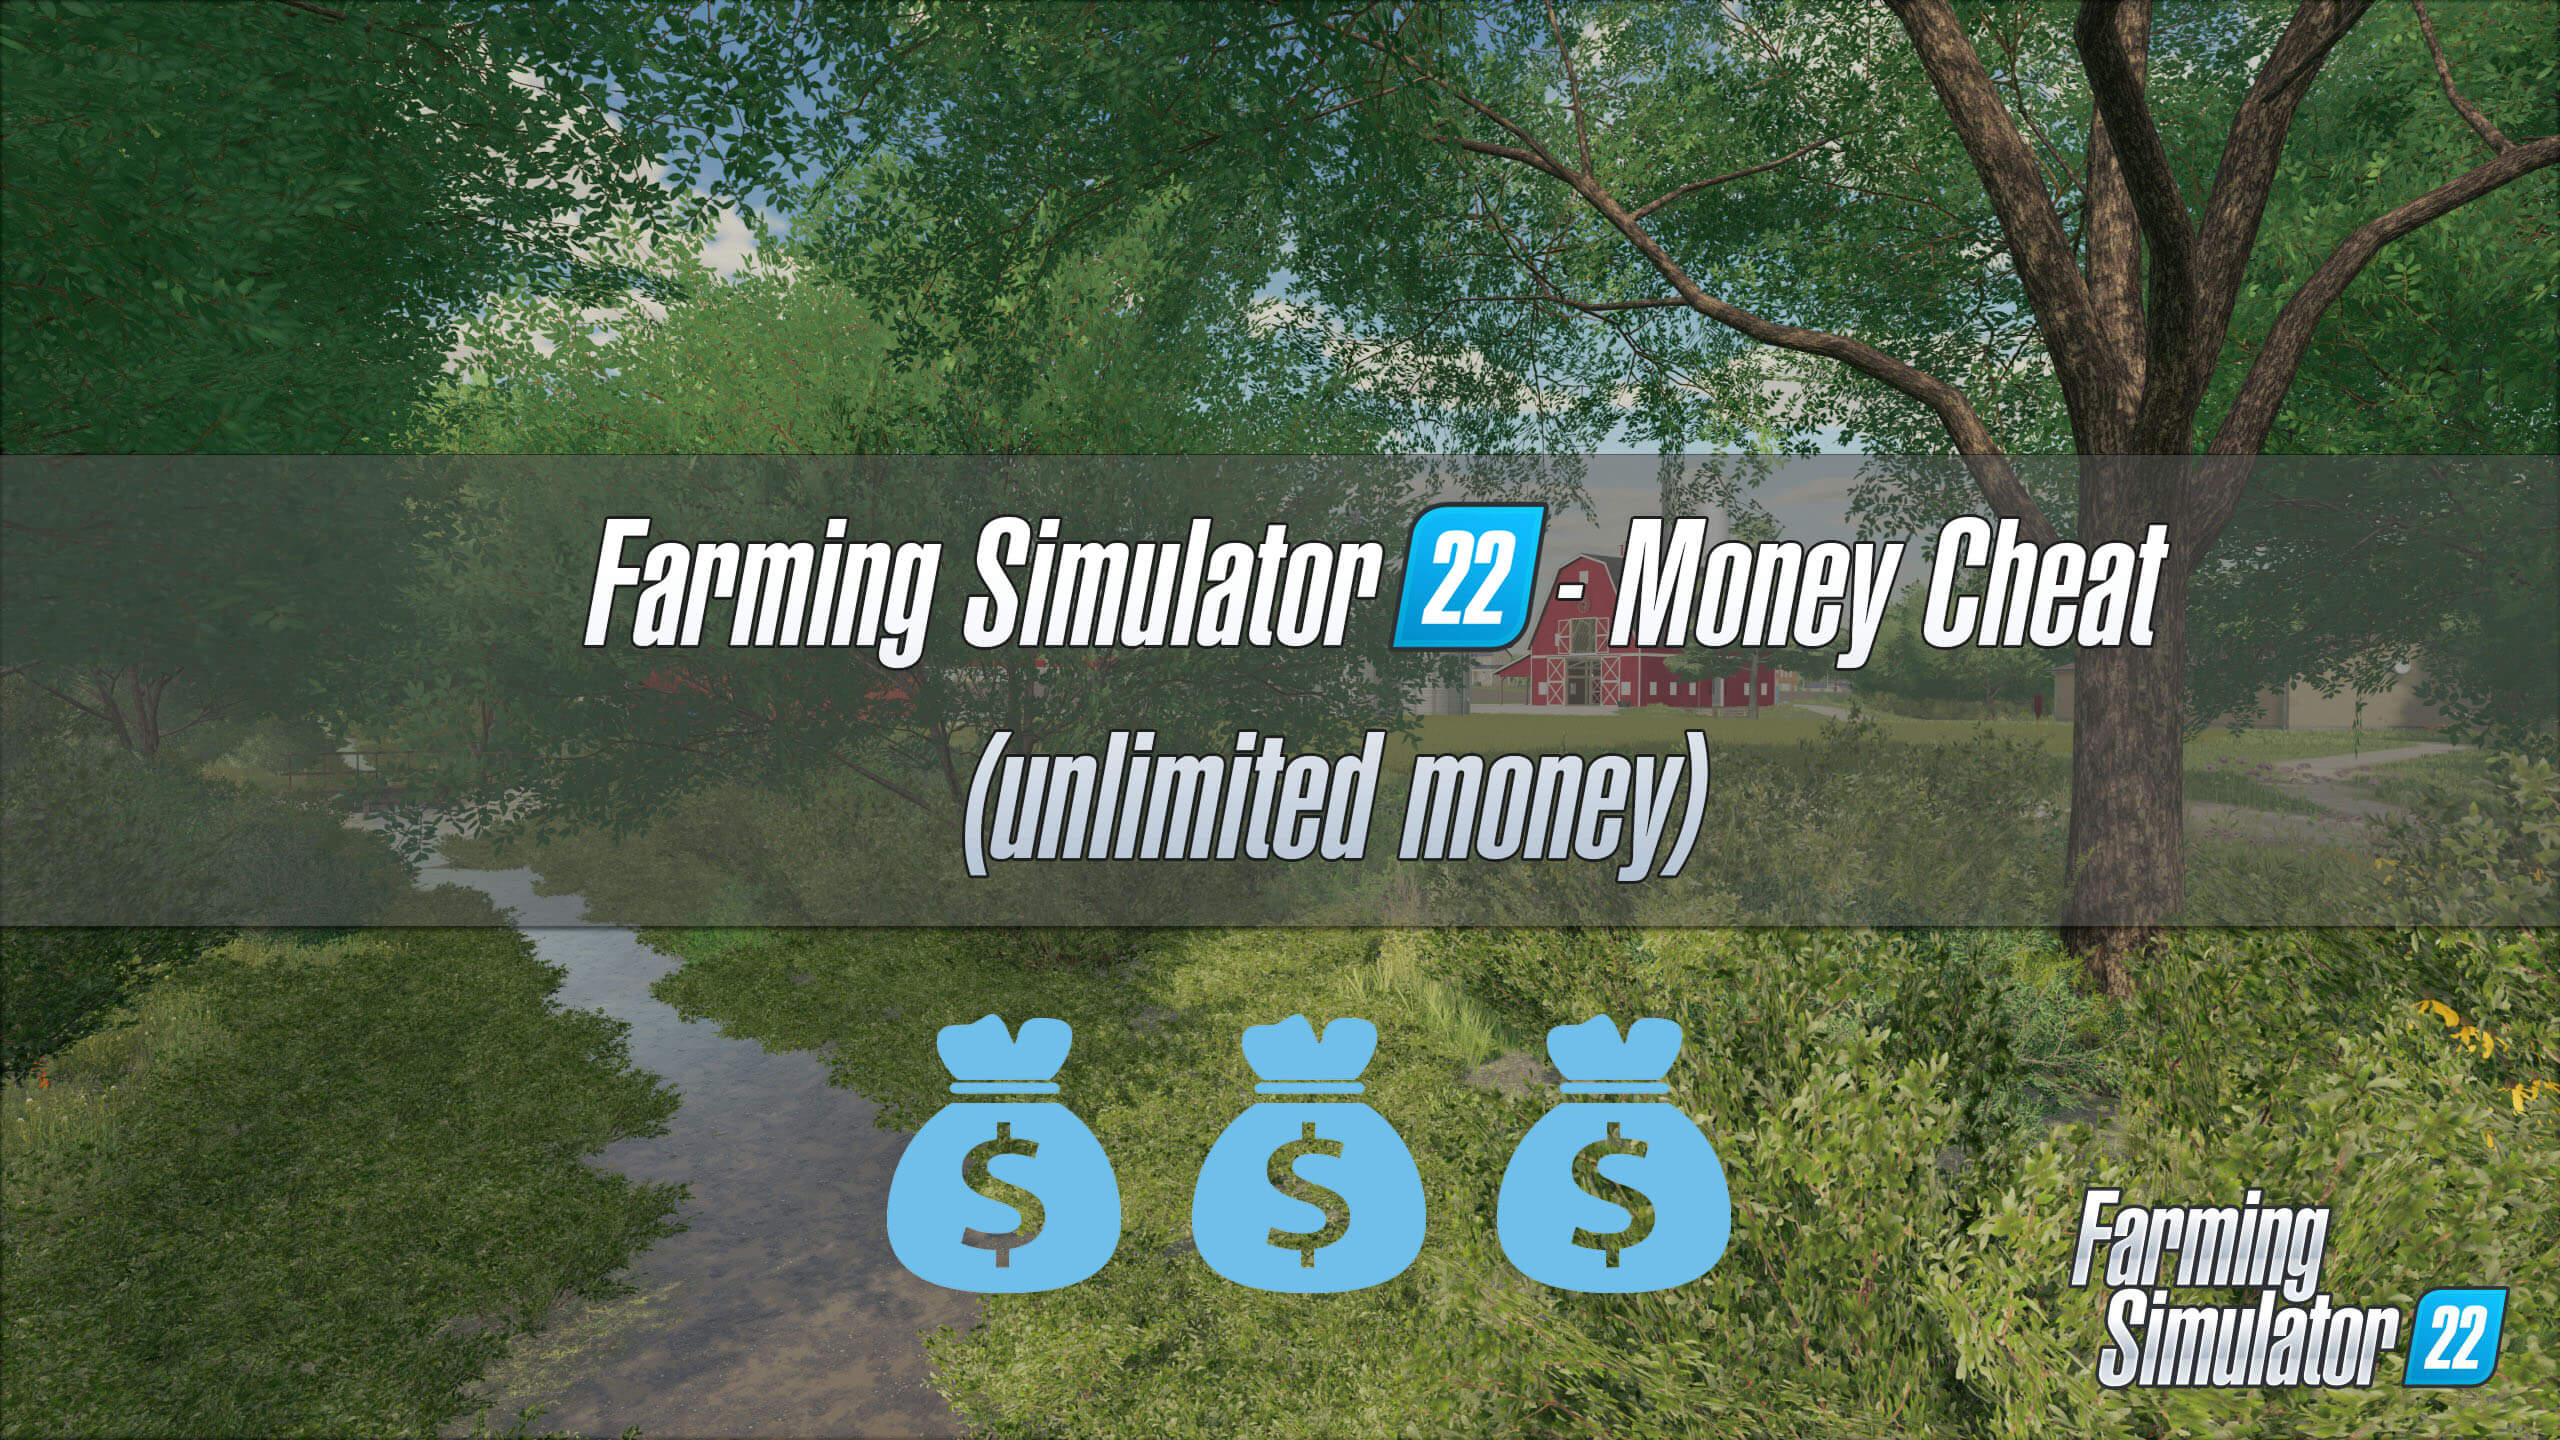 ps3 farm simulator 2019 cheats